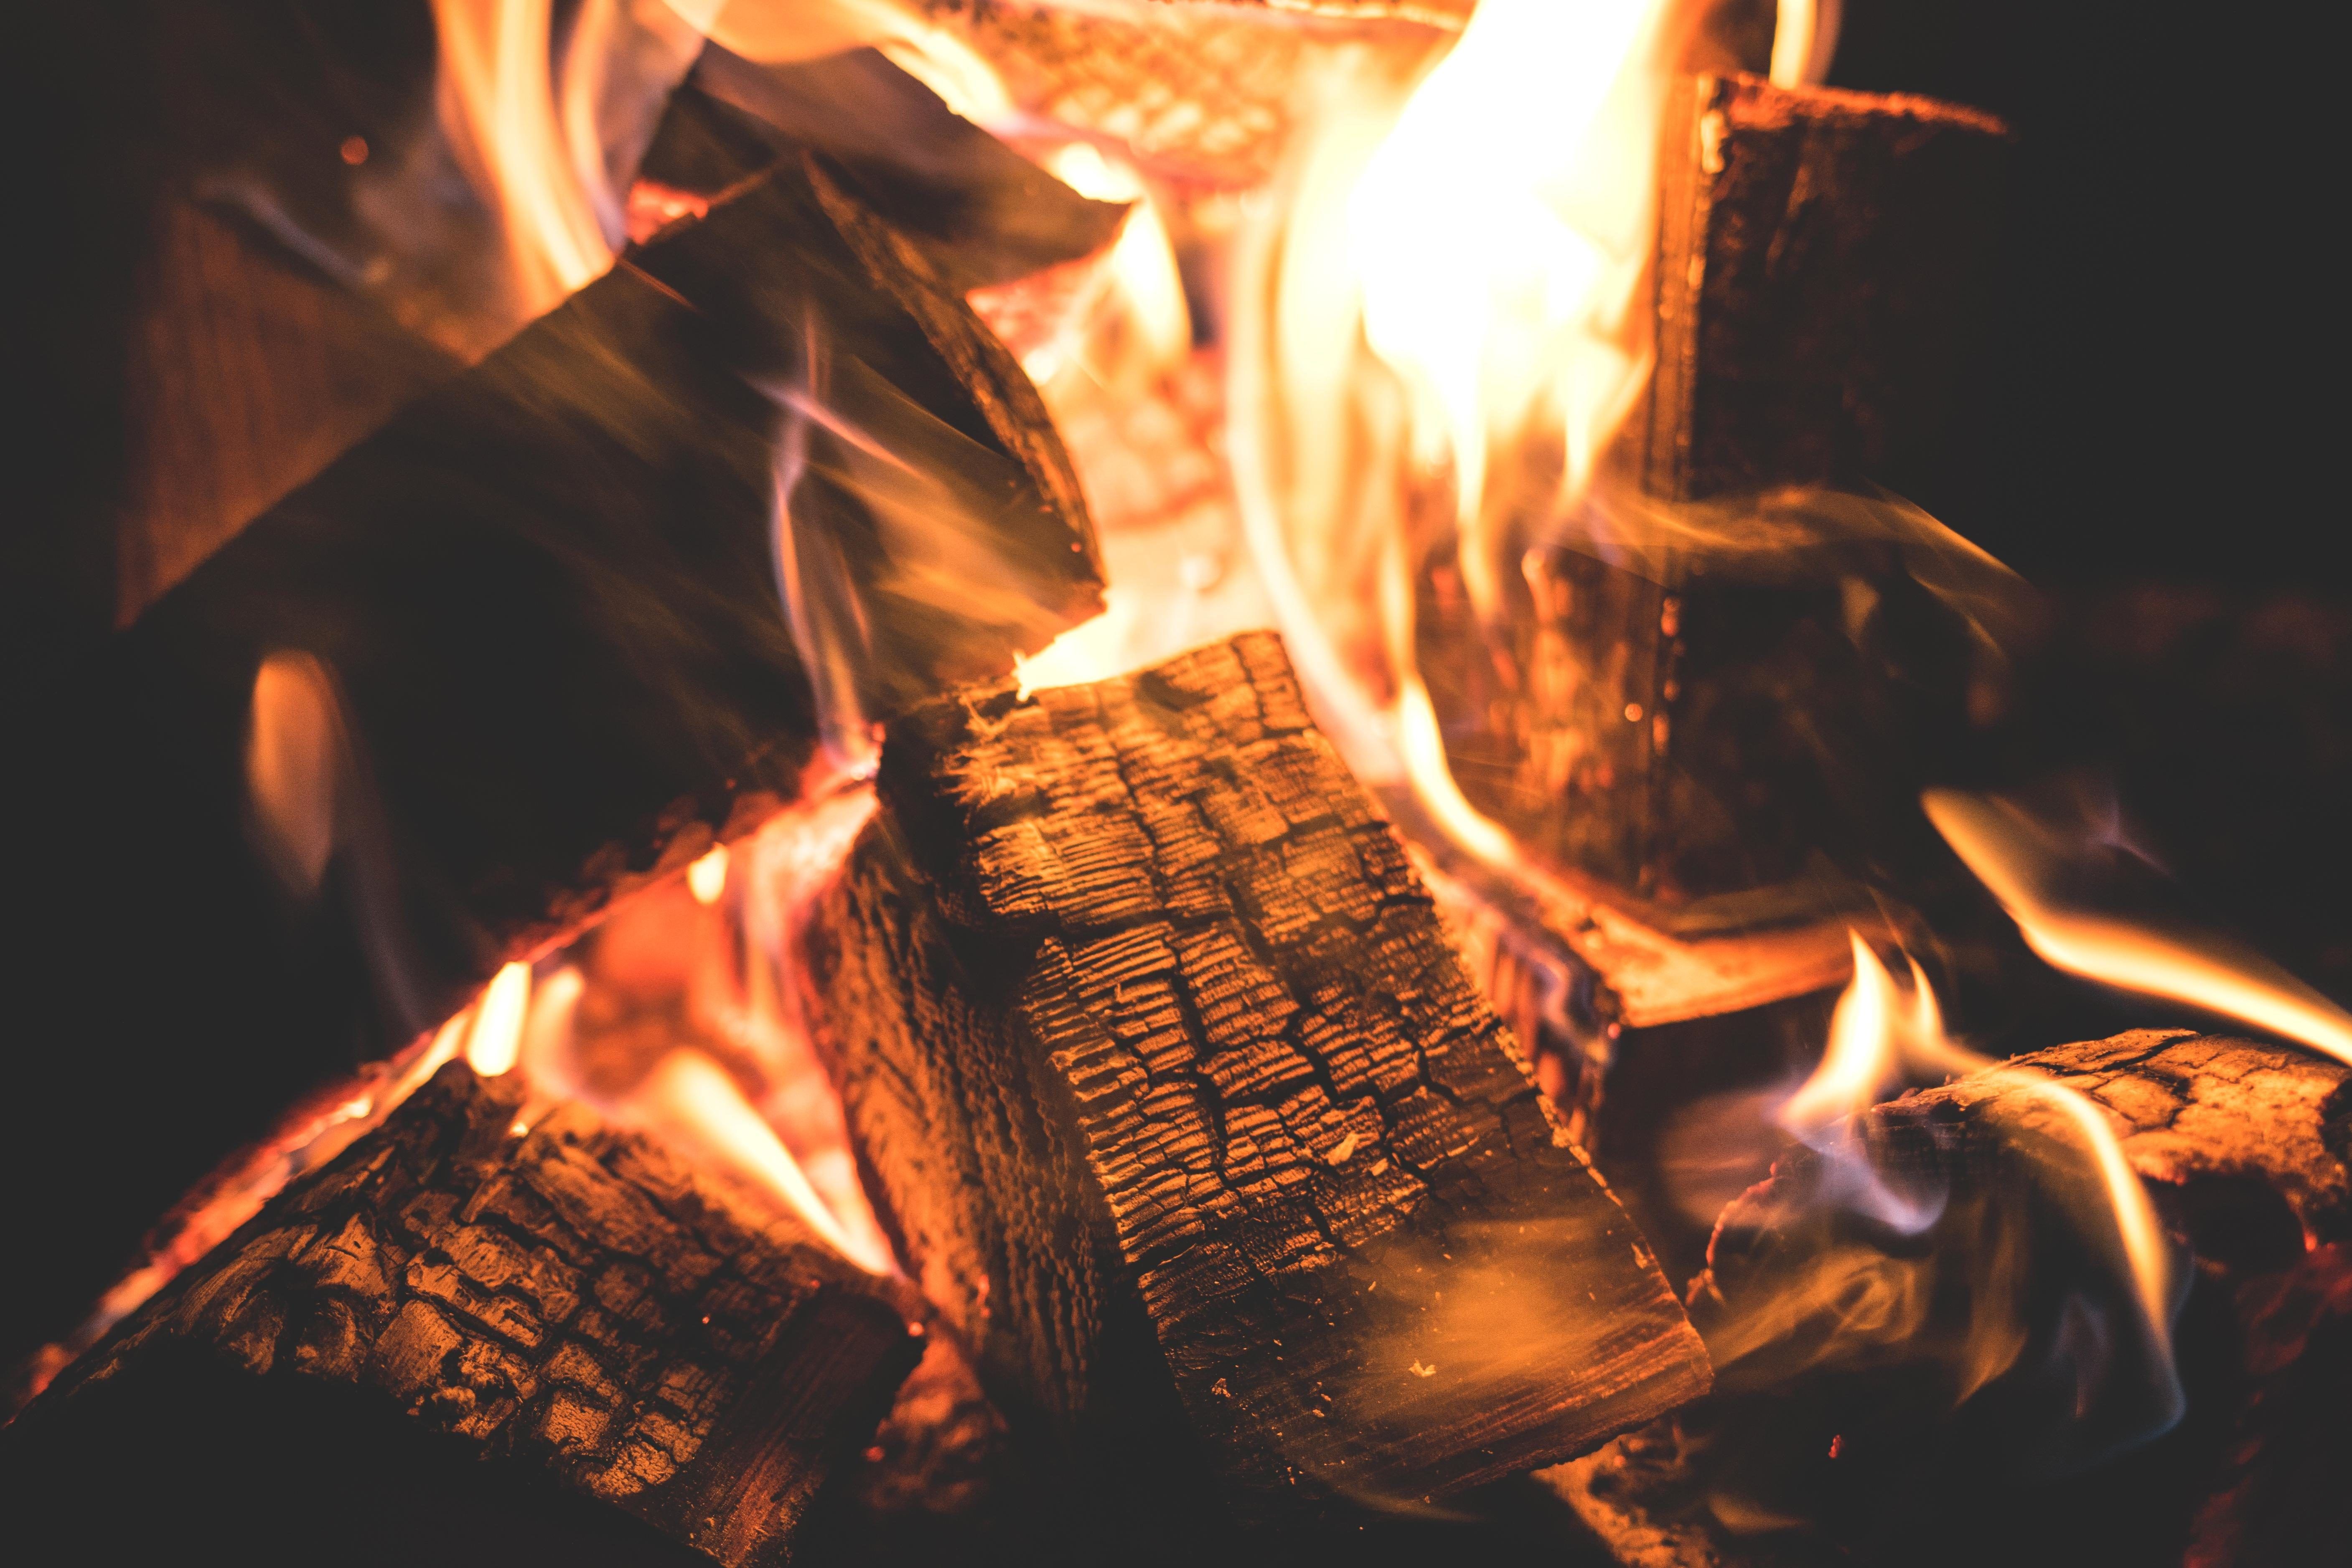  Kaminfeuer Hintergrundbild 5629x3753. Kostenlose Bild: Flamme, Wärme, Kamin, Feuer, brennen, Brennholz, verbrannt